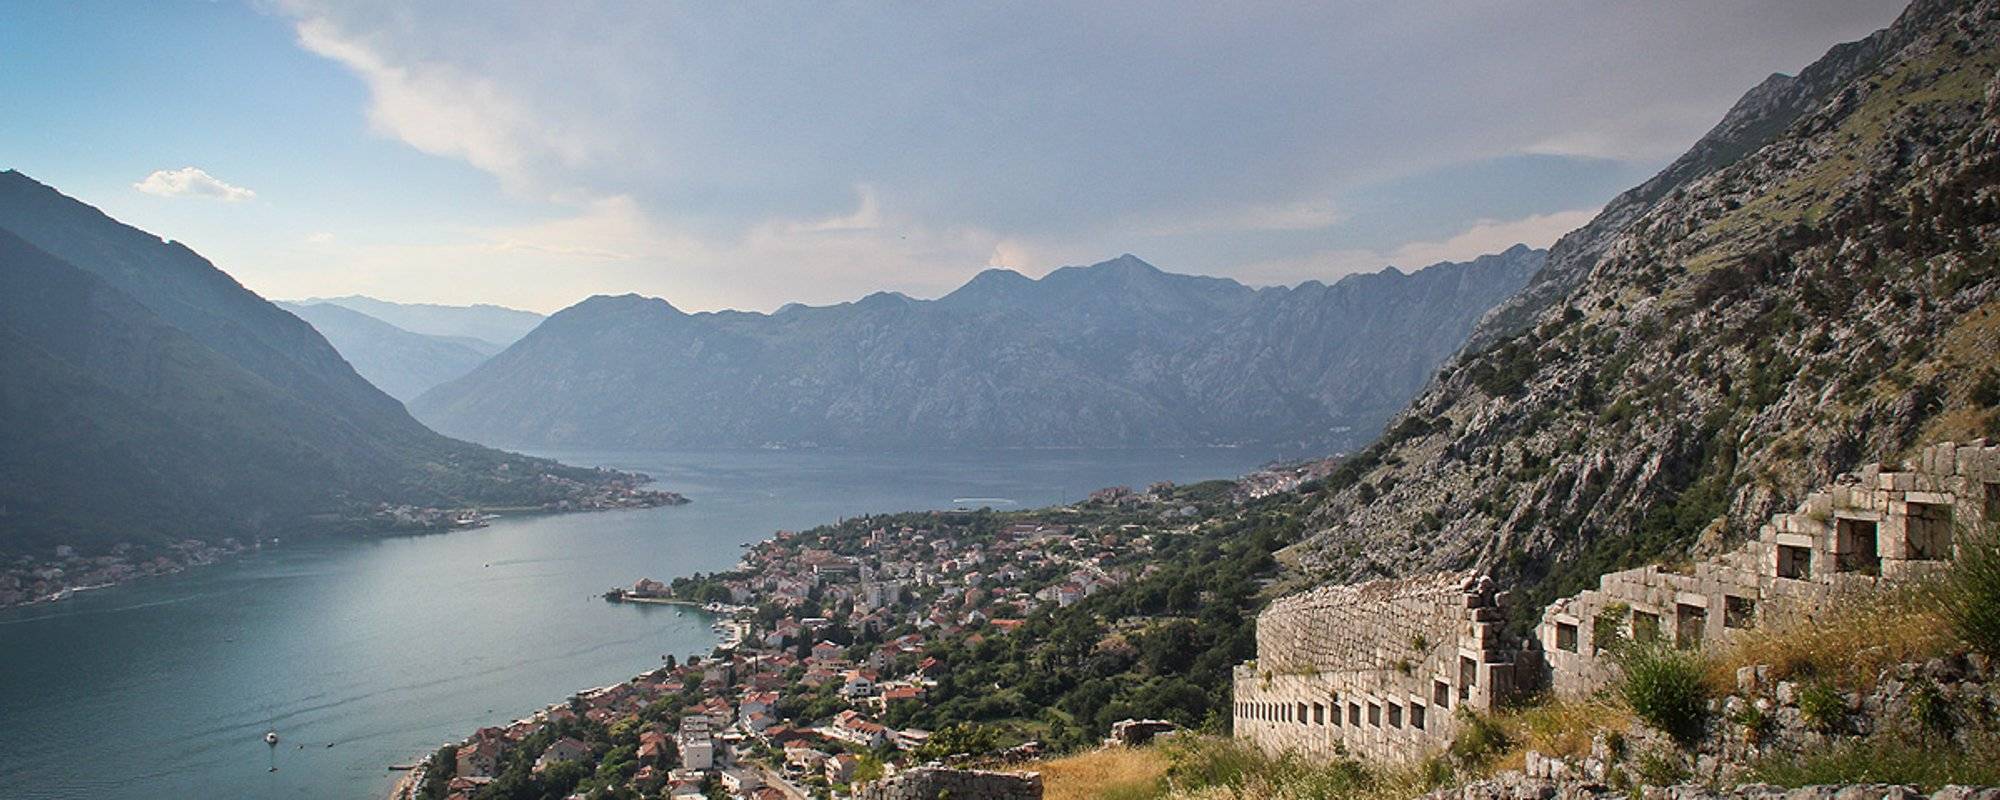 Trip to Montenegro II - Kotor [EN/DE]